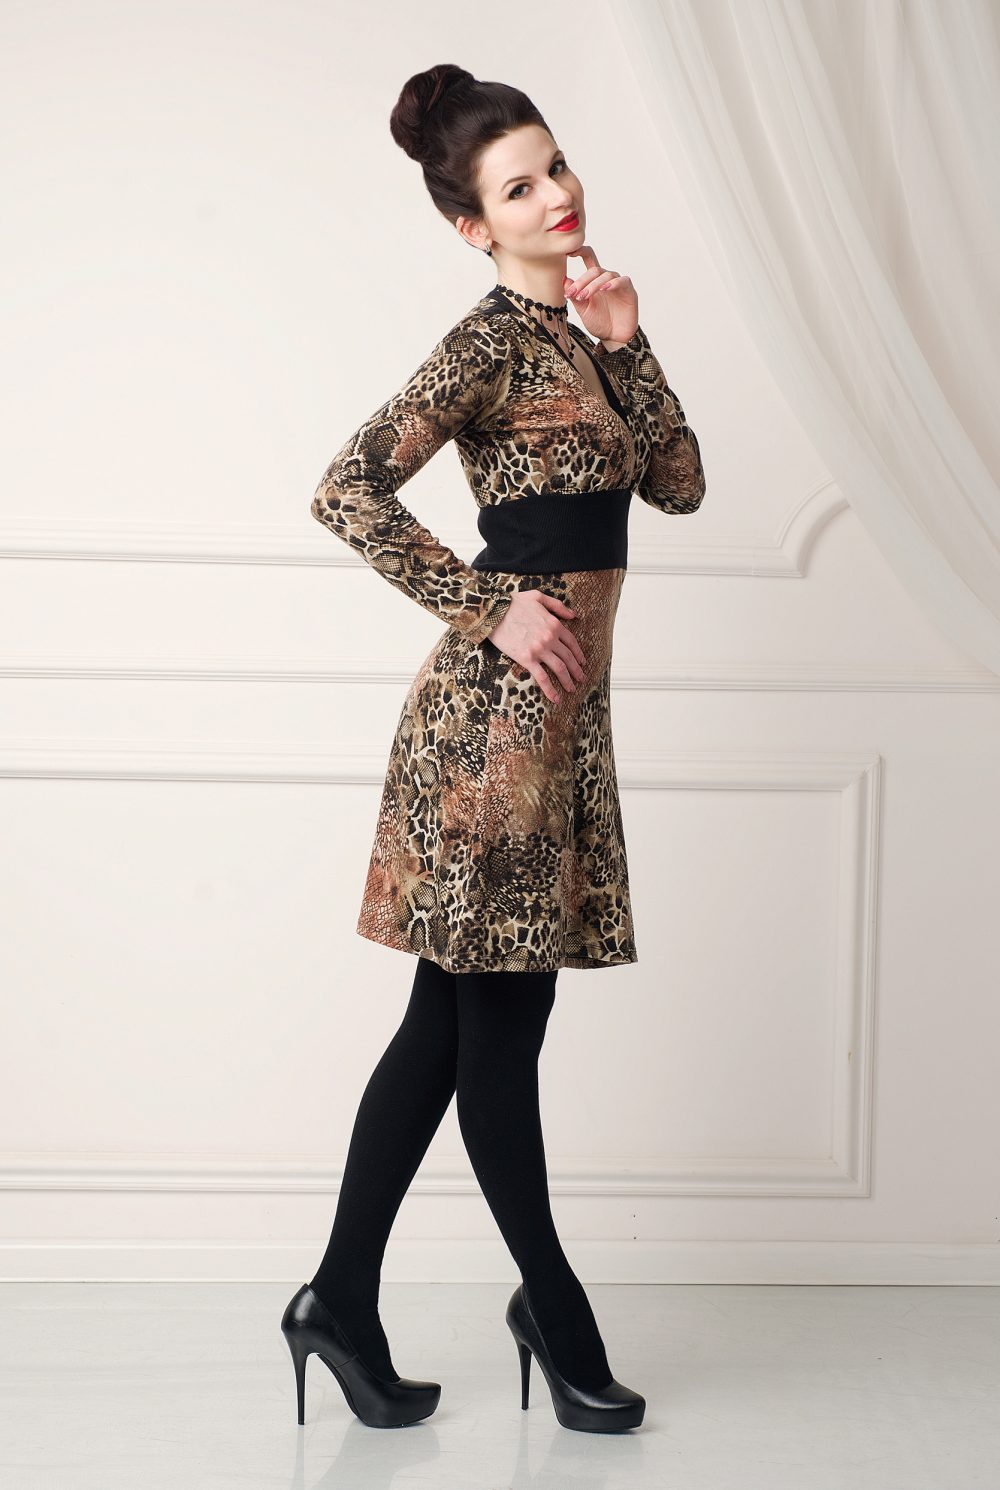 Трикотажное леопардовое платье «Хищные коготки» от дизайнера Любовь Джбааи 3